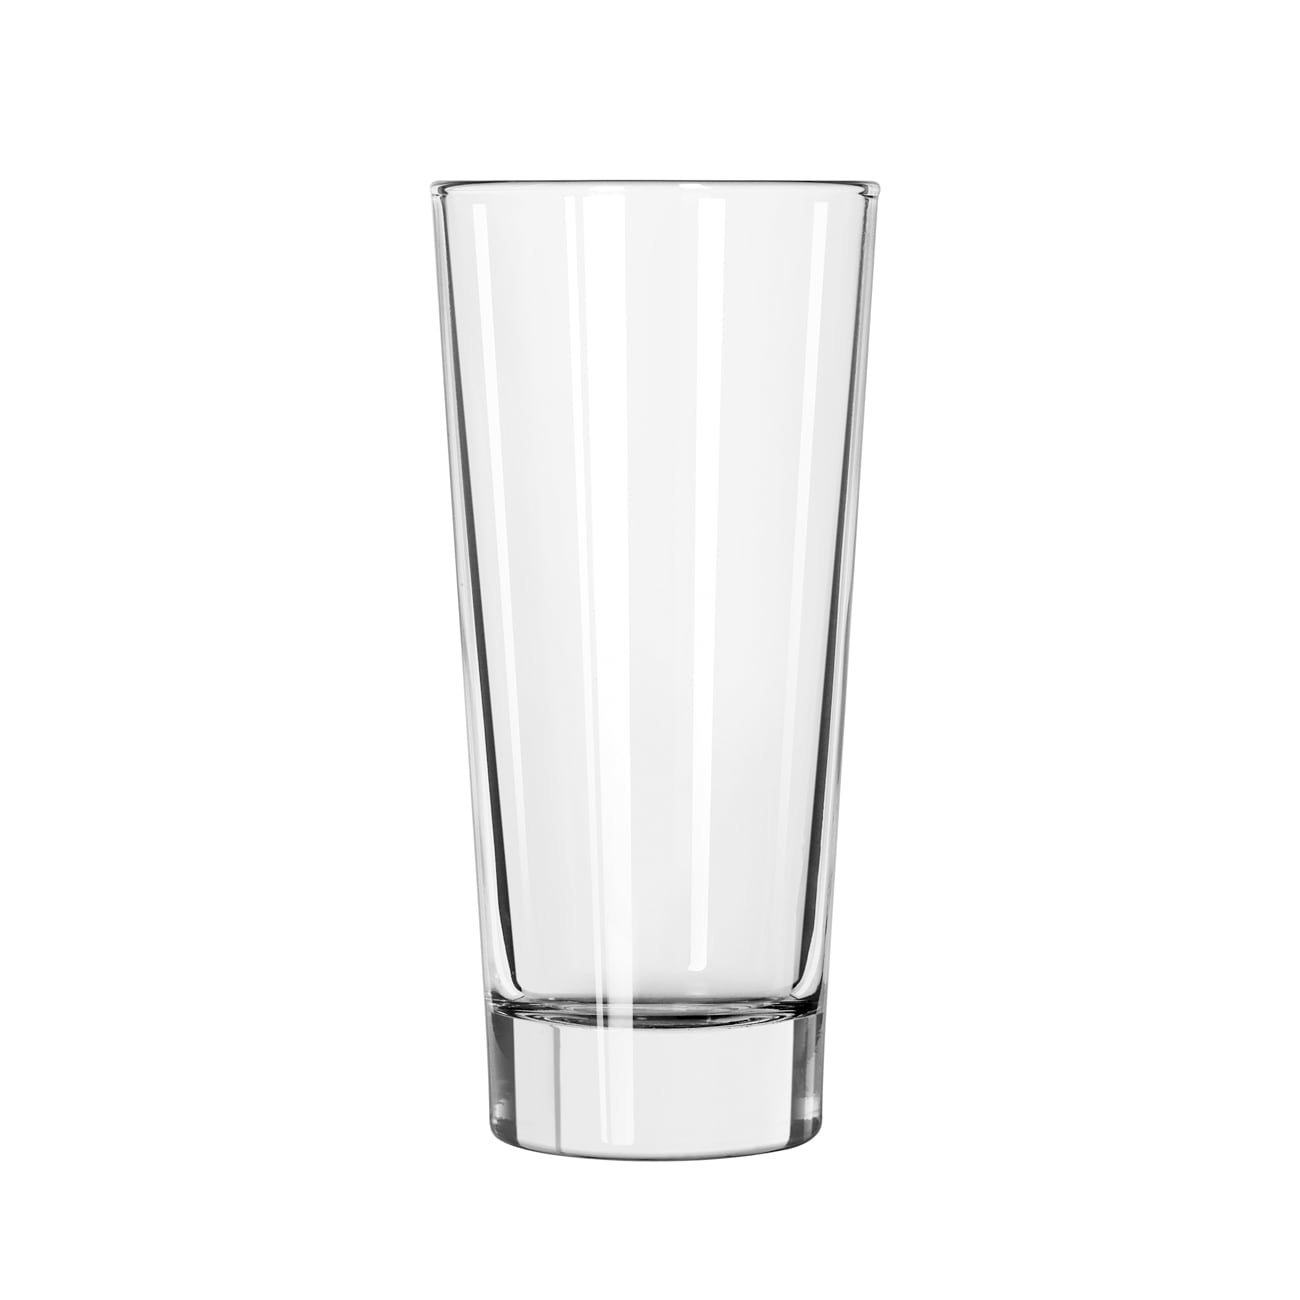 Libbey 15814 14 oz DuraTuff Elan Beverage Glass